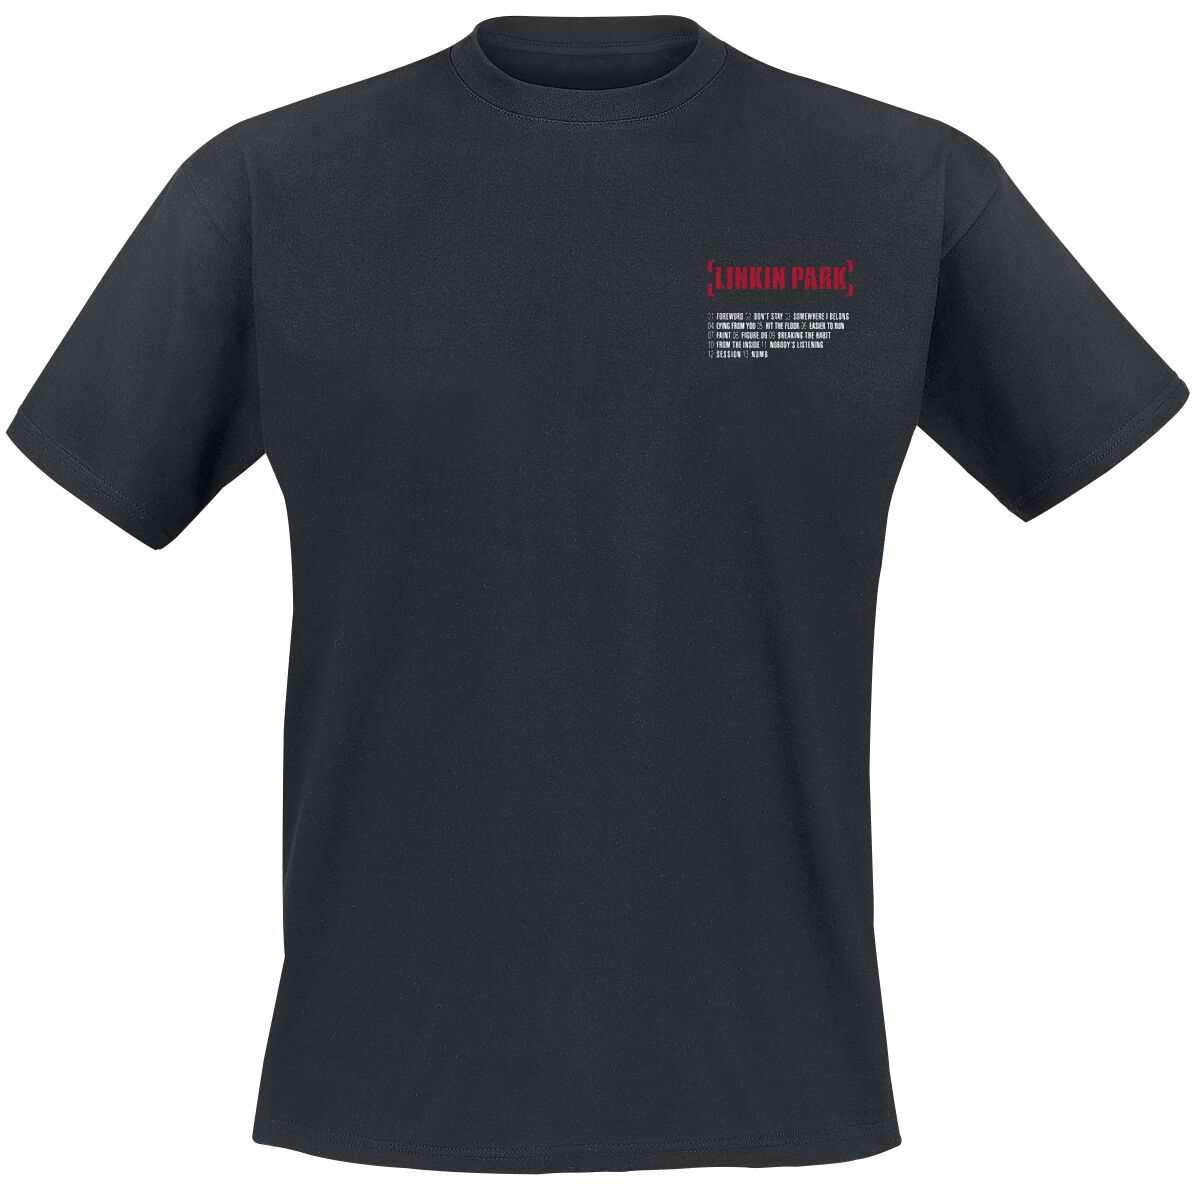 Linkin Park T-Shirt - Meteora Red - S bis XXL - für Männer - Größe L - schwarz  - EMP exklusives Merchandise!